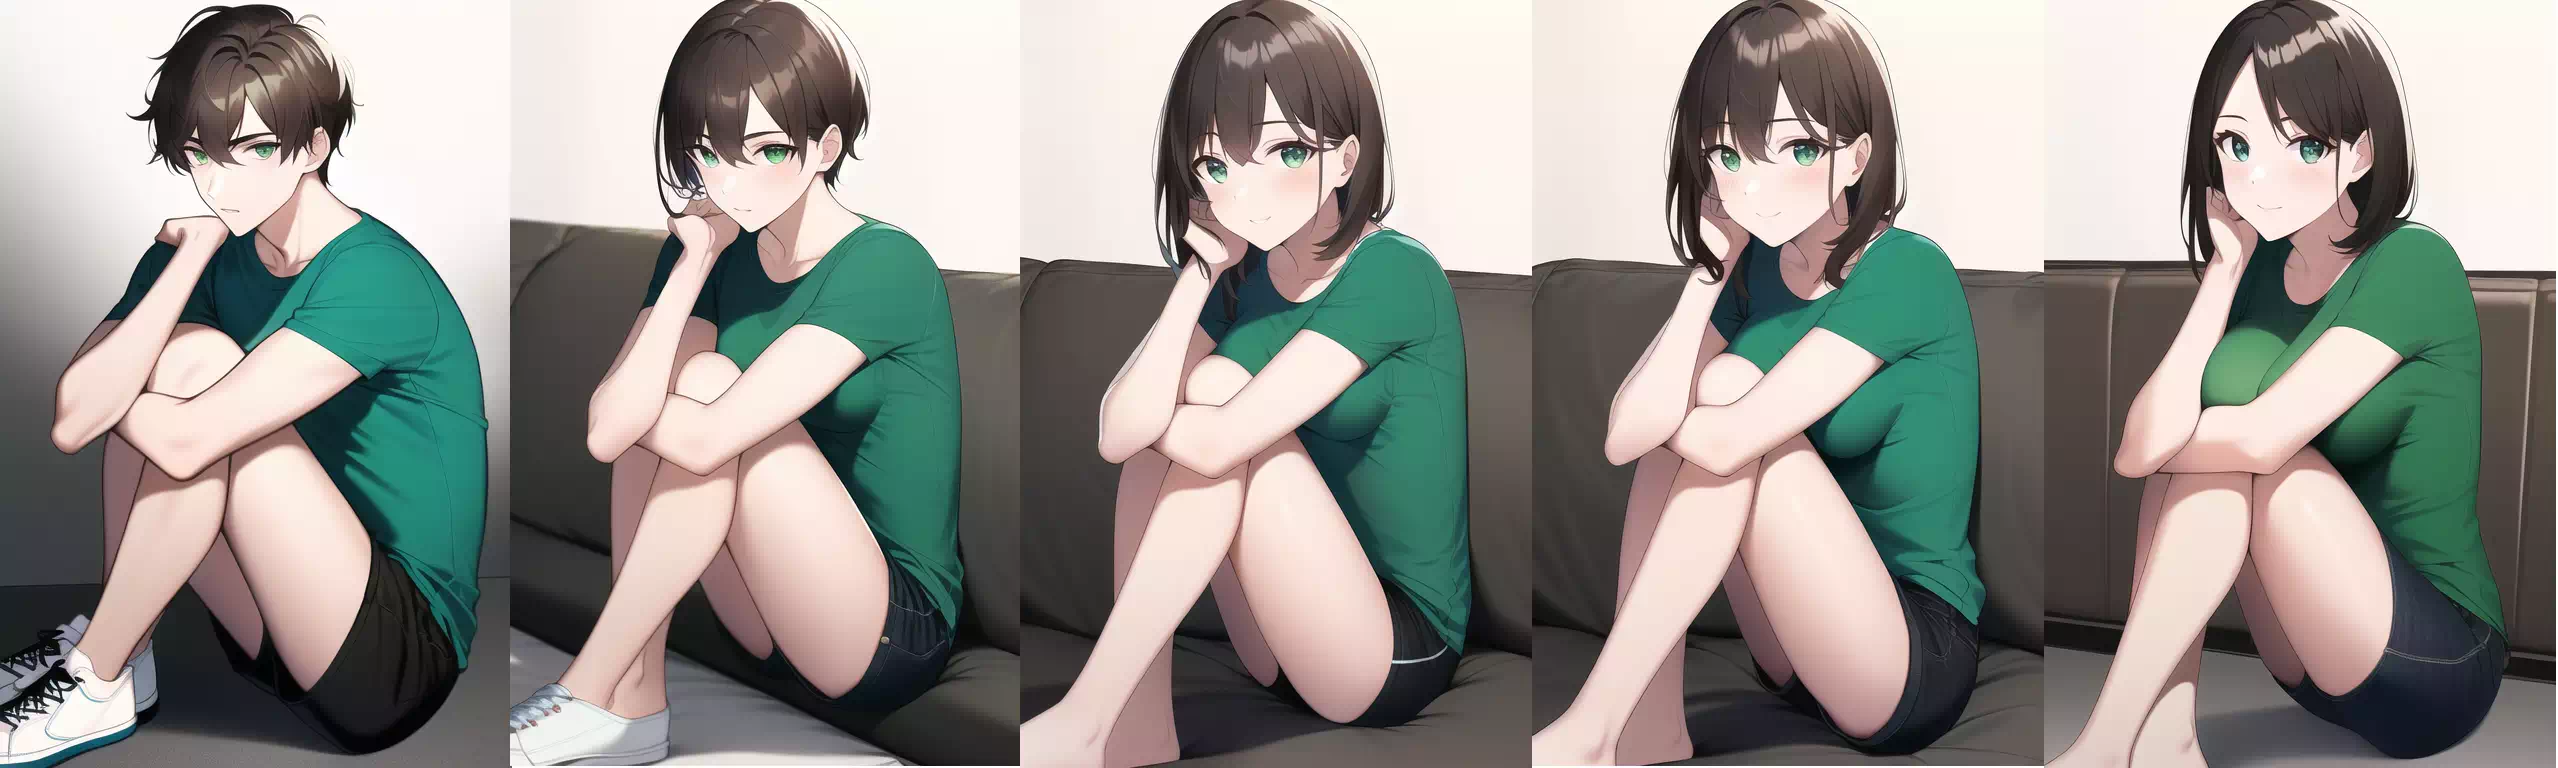 緑Tシャツの青年→お姉さんTSF